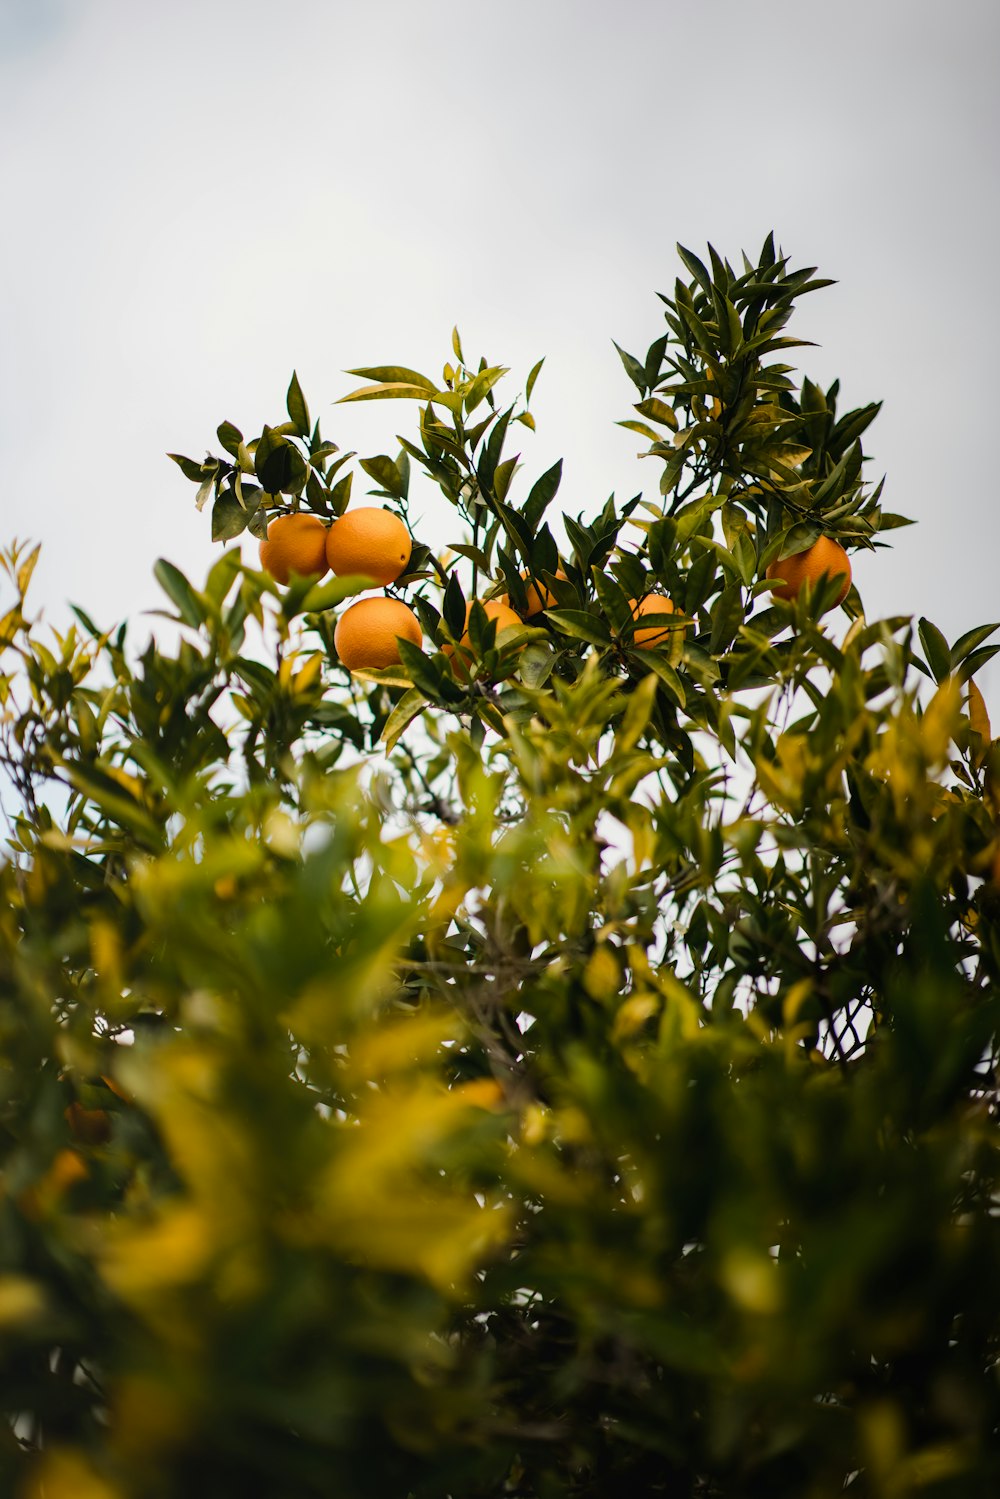 orange fruits on green tree during daytime